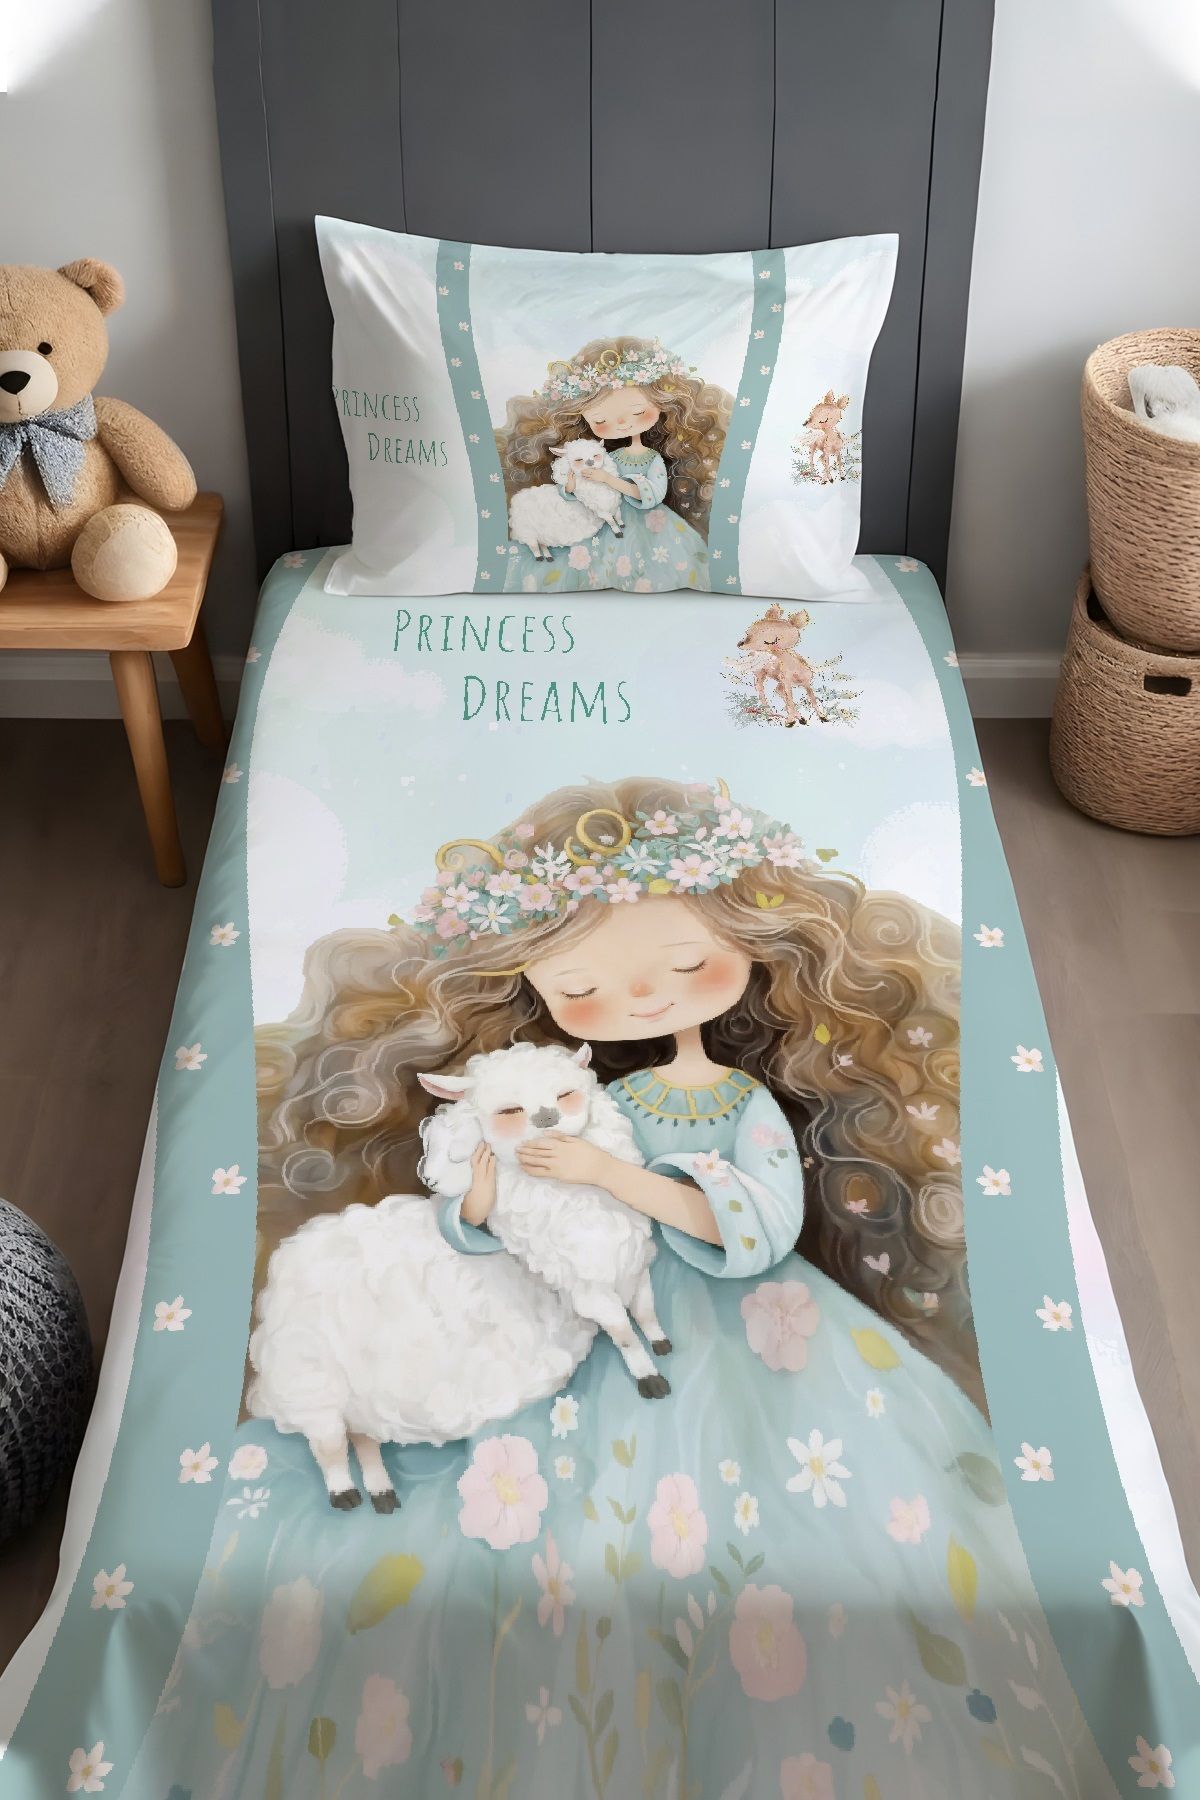 Evpanya Kuzu'lu Prenses Desenli Yatak Örtüsü ve Yastık Kılıfı